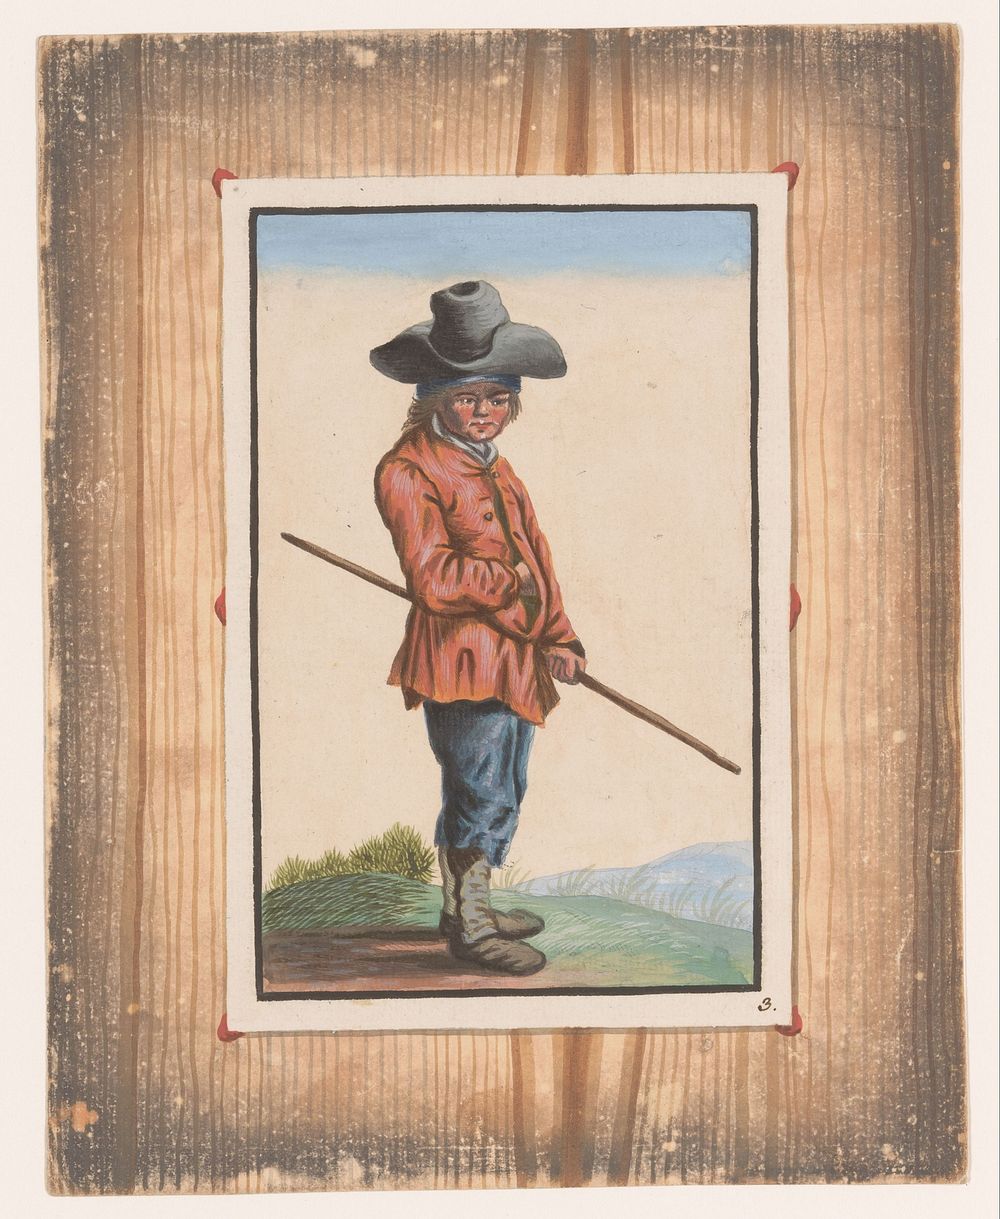 Staande jongen met stok (c. 1740 - c. 1760) by anonymous